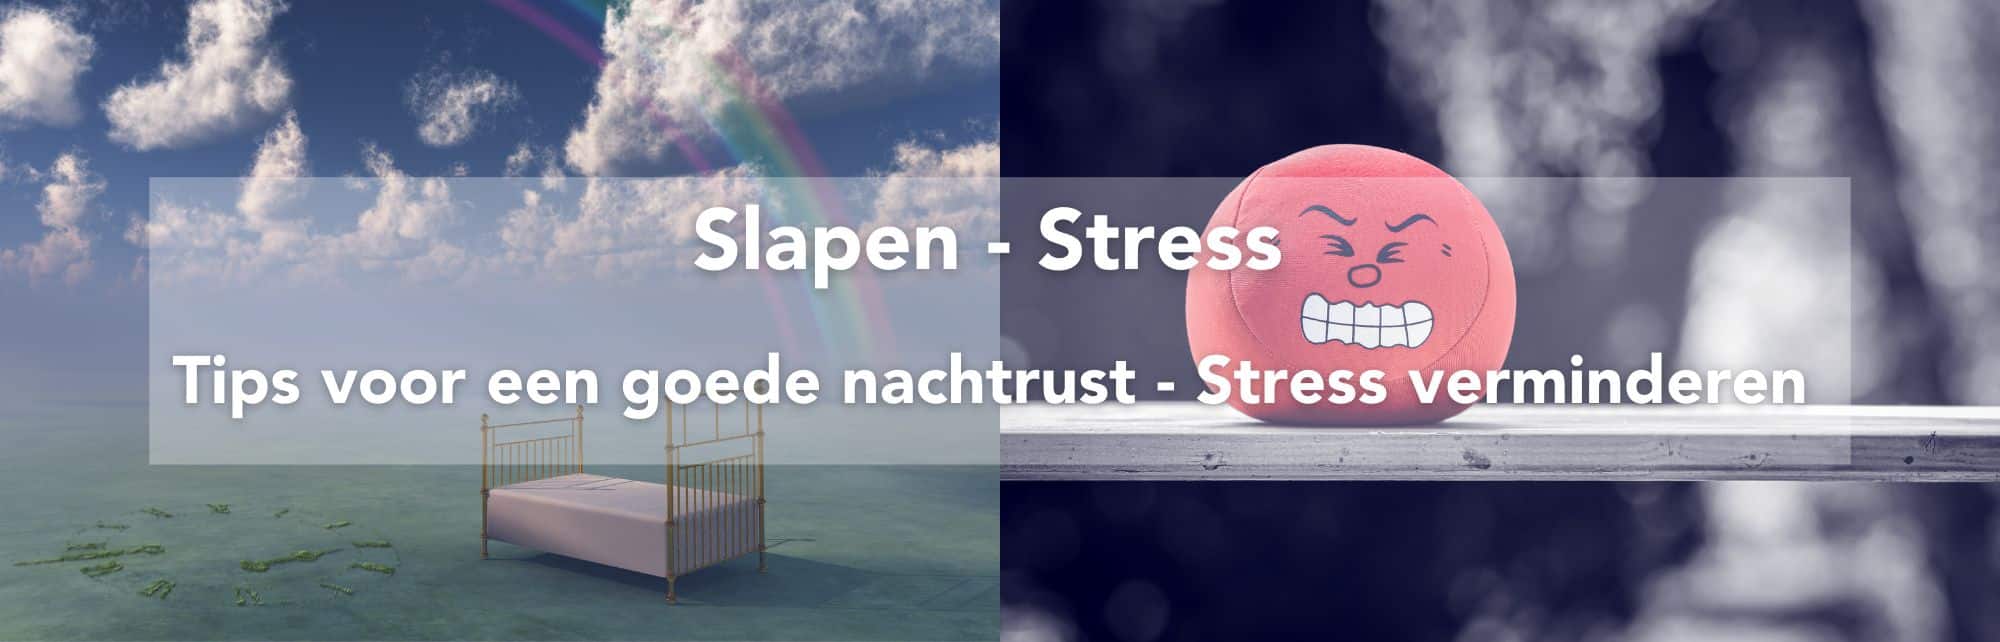 Slapen-Stress